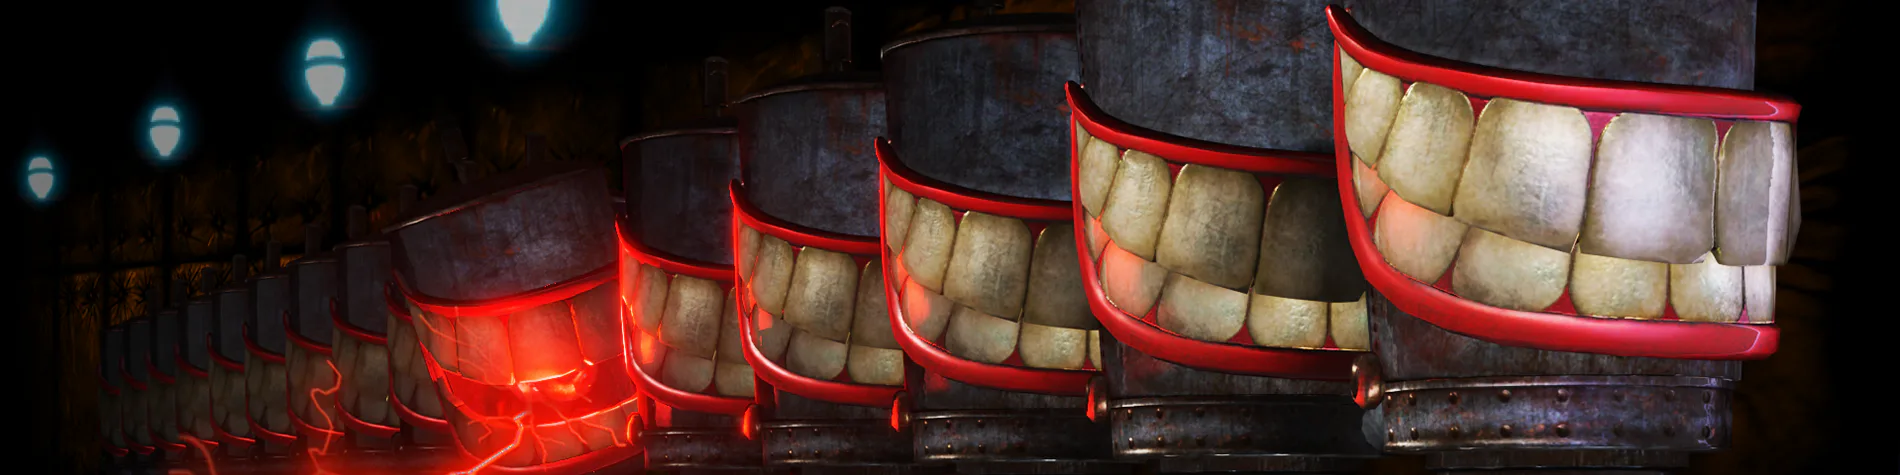 Oddworld: Smile Factory